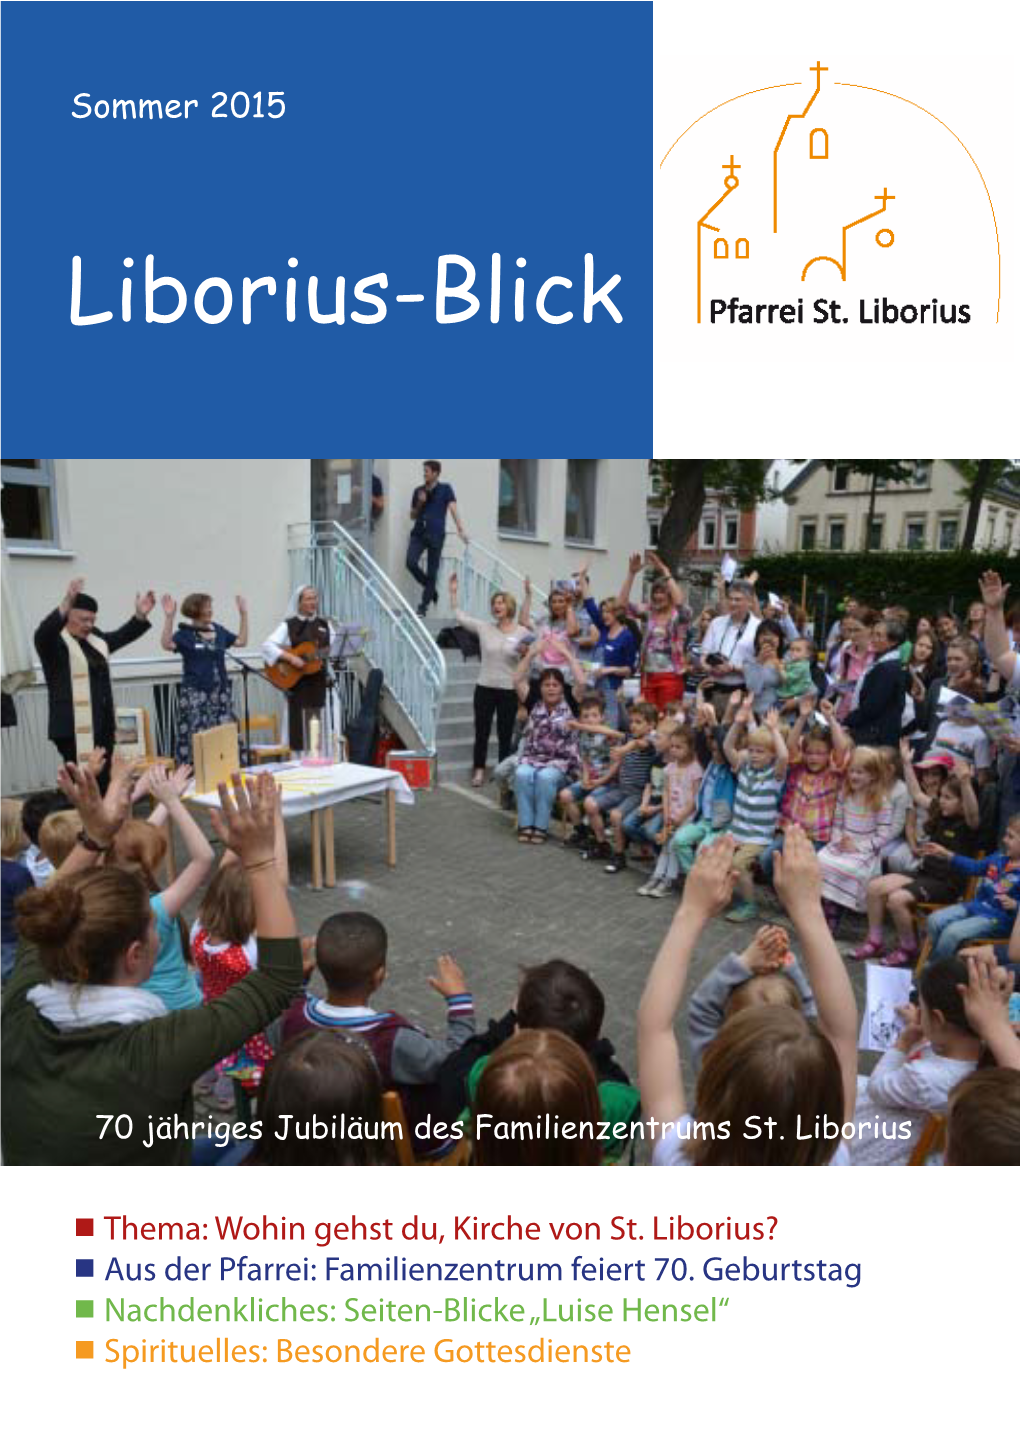 Liborius-Blick